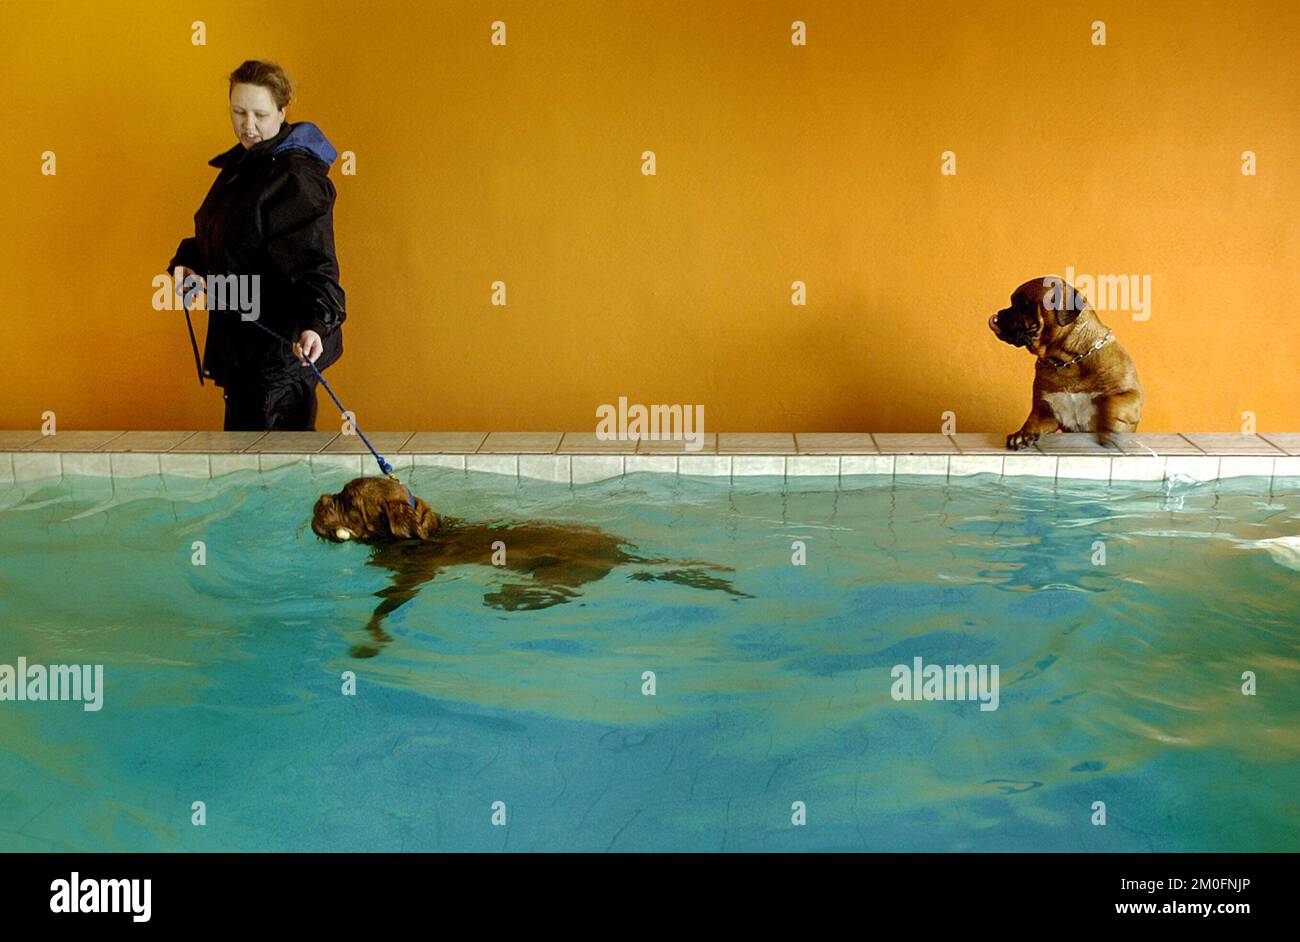 PA PHOTOS / POLFOTO - solo USO: Benvenuto a 'AA Hundecenter', potete chiamarlo 'Hilton hotel for dogs'. Qui i cani hanno pavimenti riscaldati, piscina riscaldata, camerieri, un delizioso menu e attività emozionanti. La foto mostra: Due cani che si divertono in piscina. Foto Stock